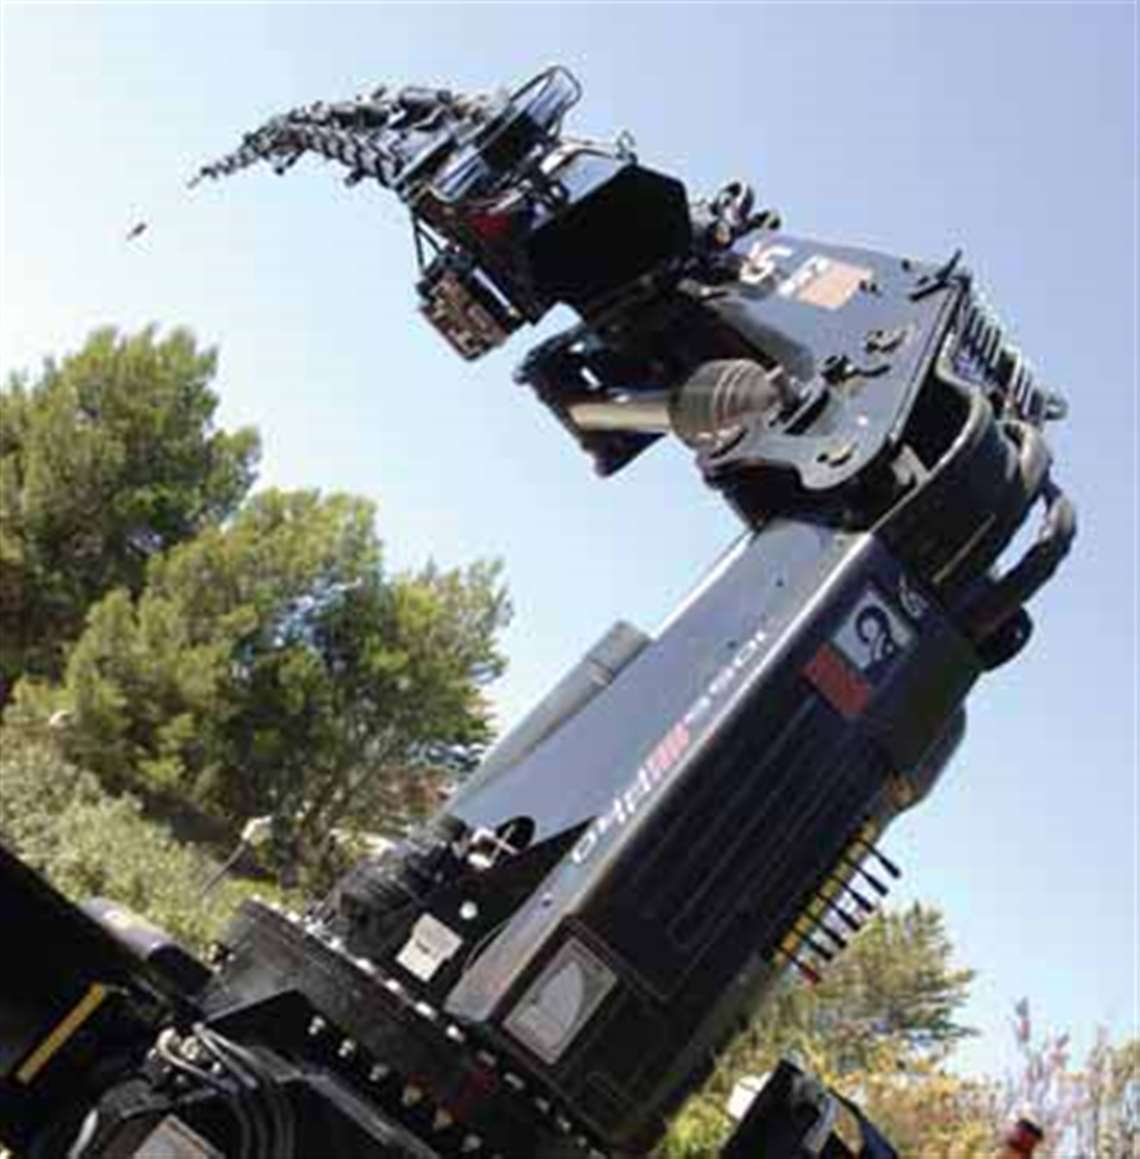 Hiab's XS 1055 hydraulic loader crane